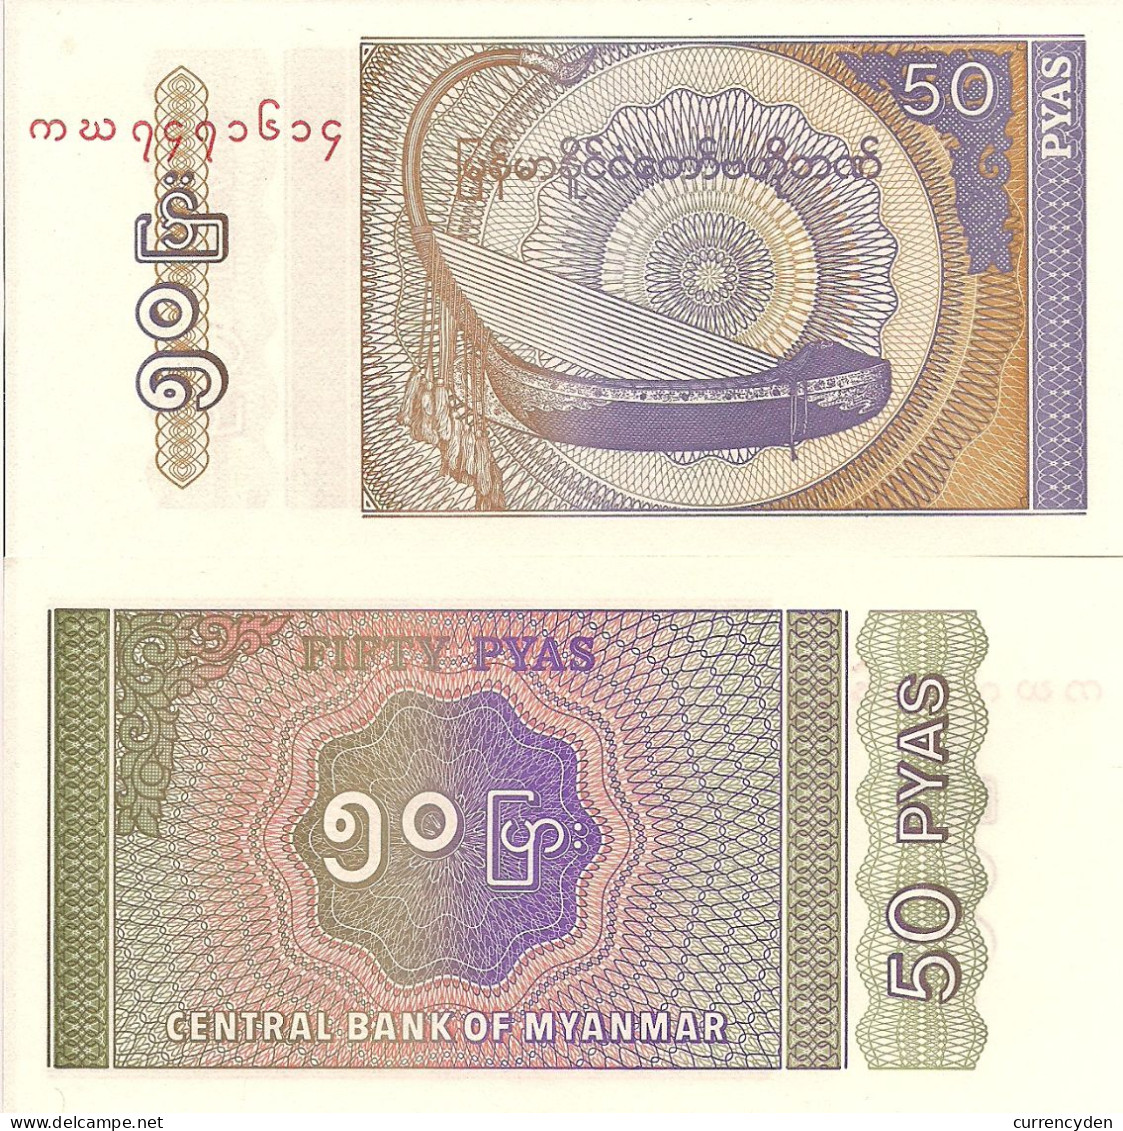 Myanmar (Burma) P68, 50 Pyas, "Saung Gauk" (Burmese Bow Harp) UNC 1994 - Myanmar